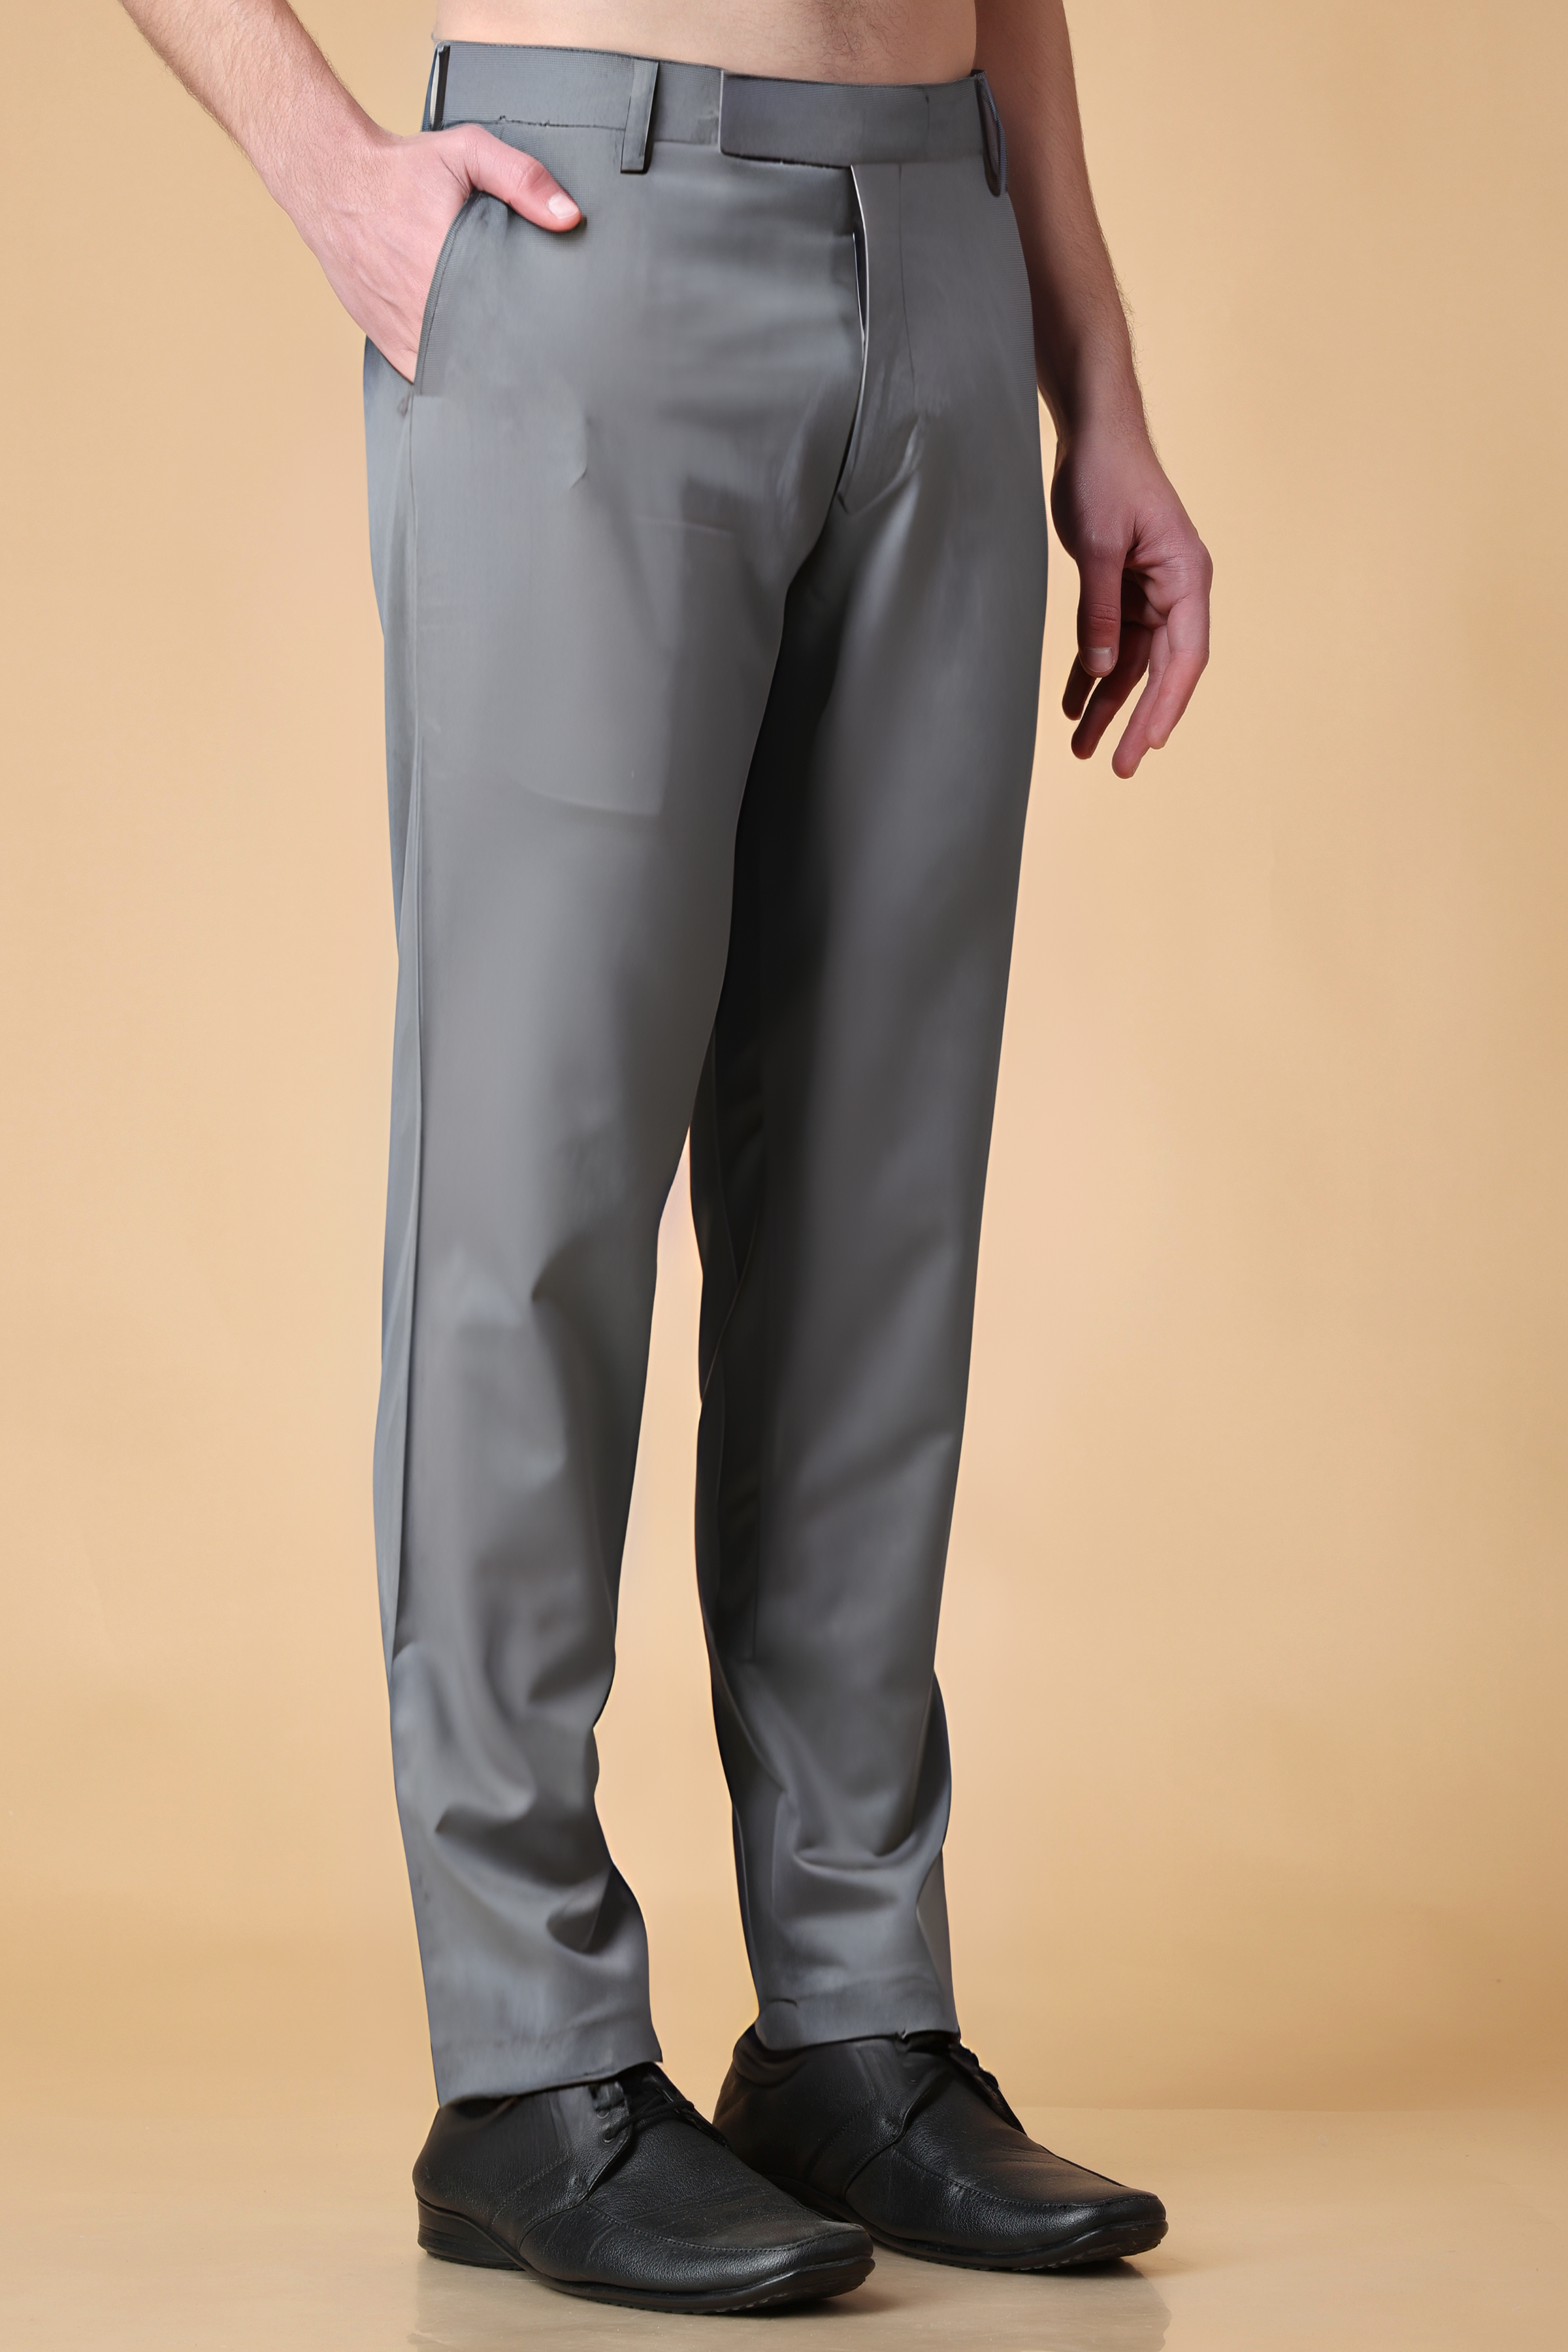 Haul Chic Navy Blue Slim Fit Formal Trouser Pant For Men, Narrow Fit Formal  Trousers, मैन स्लिम फिट ट्राउजर, पुरुषों के स्लिम फिट ट्राउजर - Livysh,  Hyderabad | ID: 2851233586133